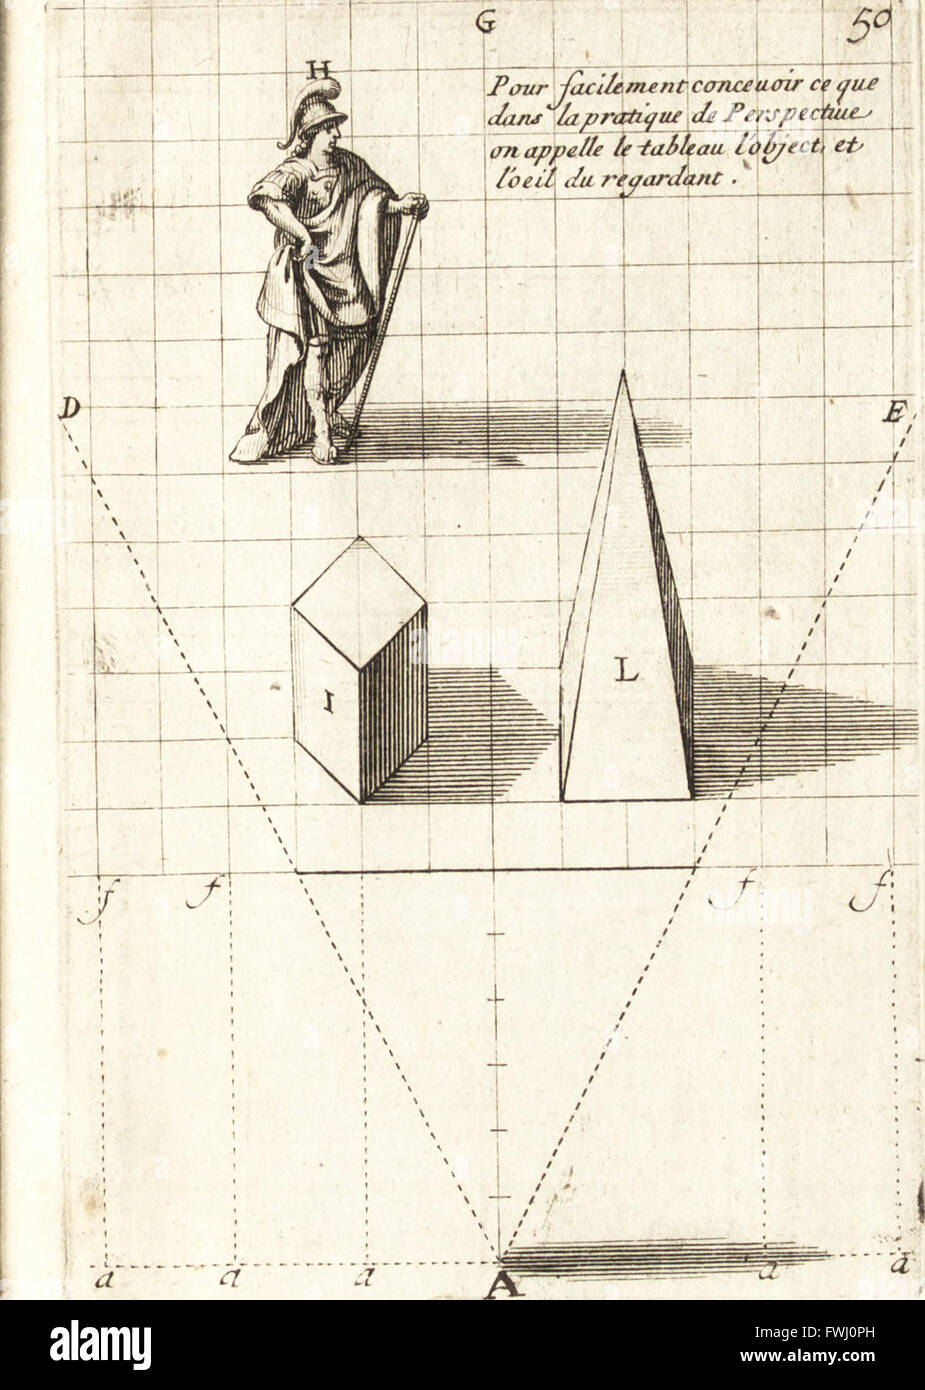 TraitC3A9 des pratiques geometrales et prospettive - enseignC3A9es dans l'Academie Royale de la peinture et scultura (1665) Foto Stock